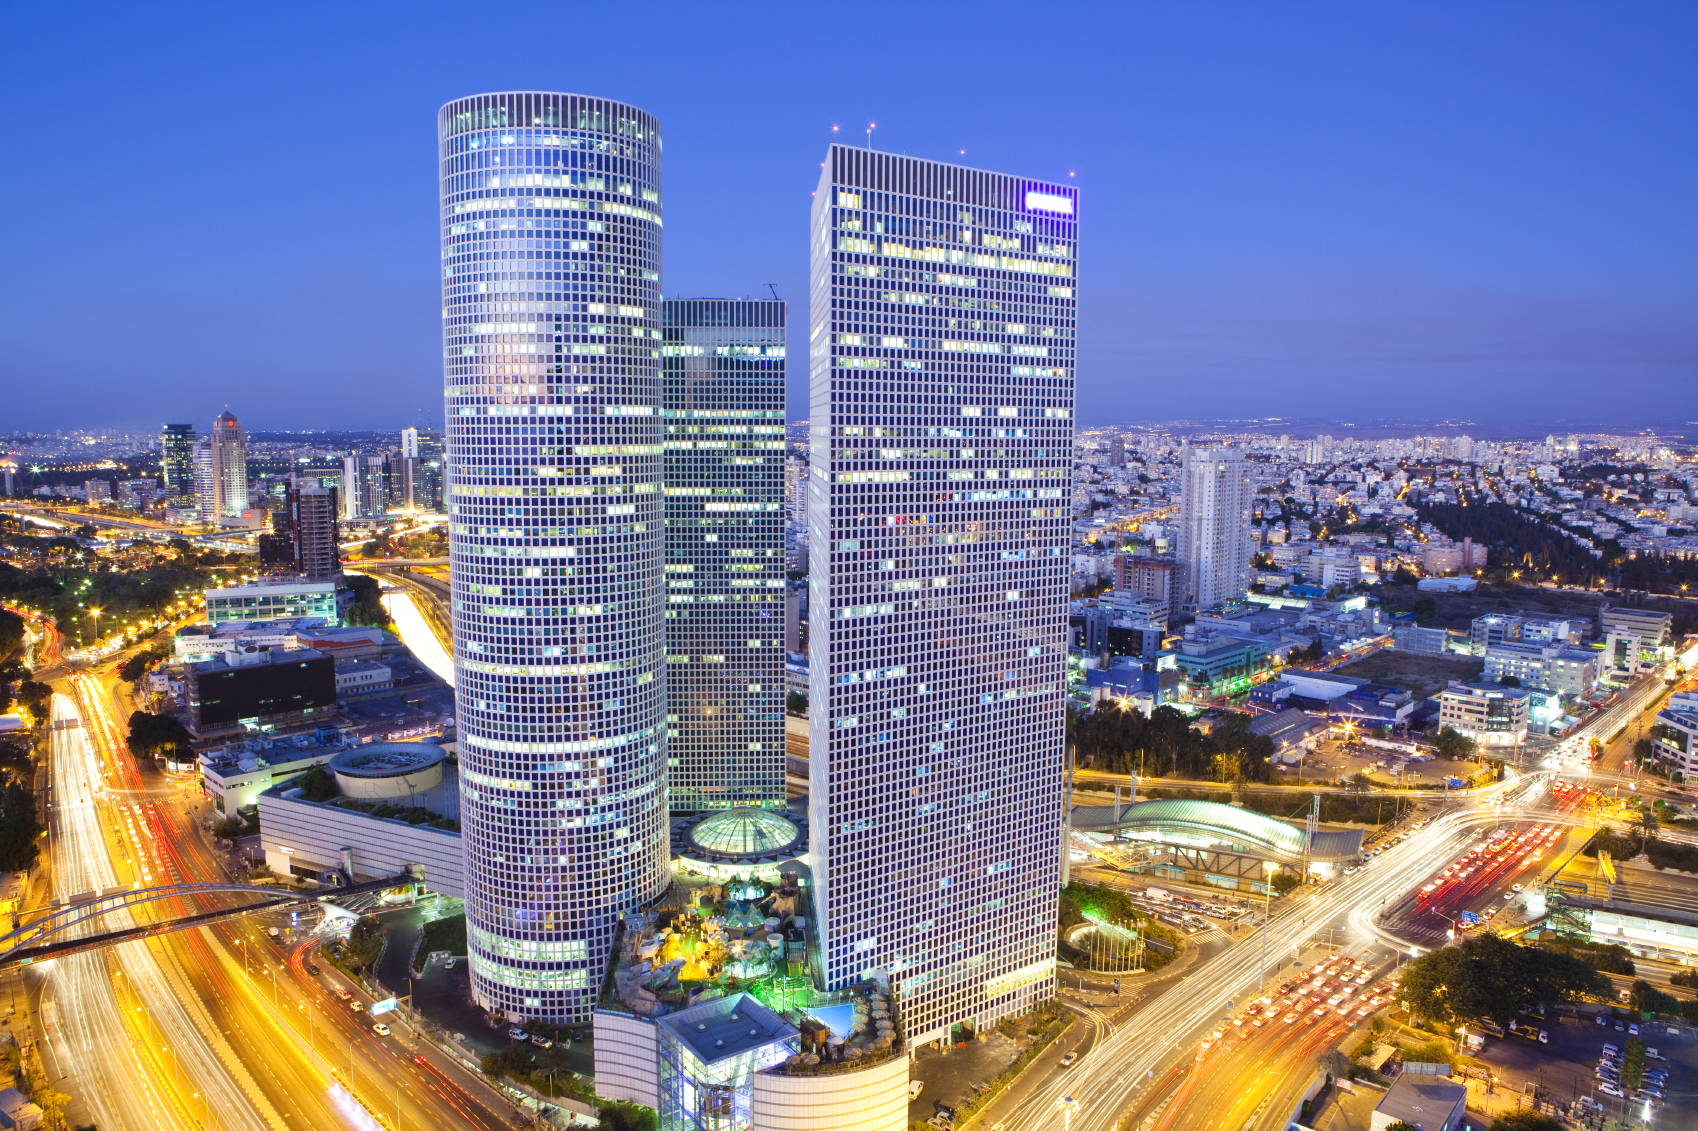 Cidade de Israel é considerada inovadora e tecnológica (Foto: Reprodução).